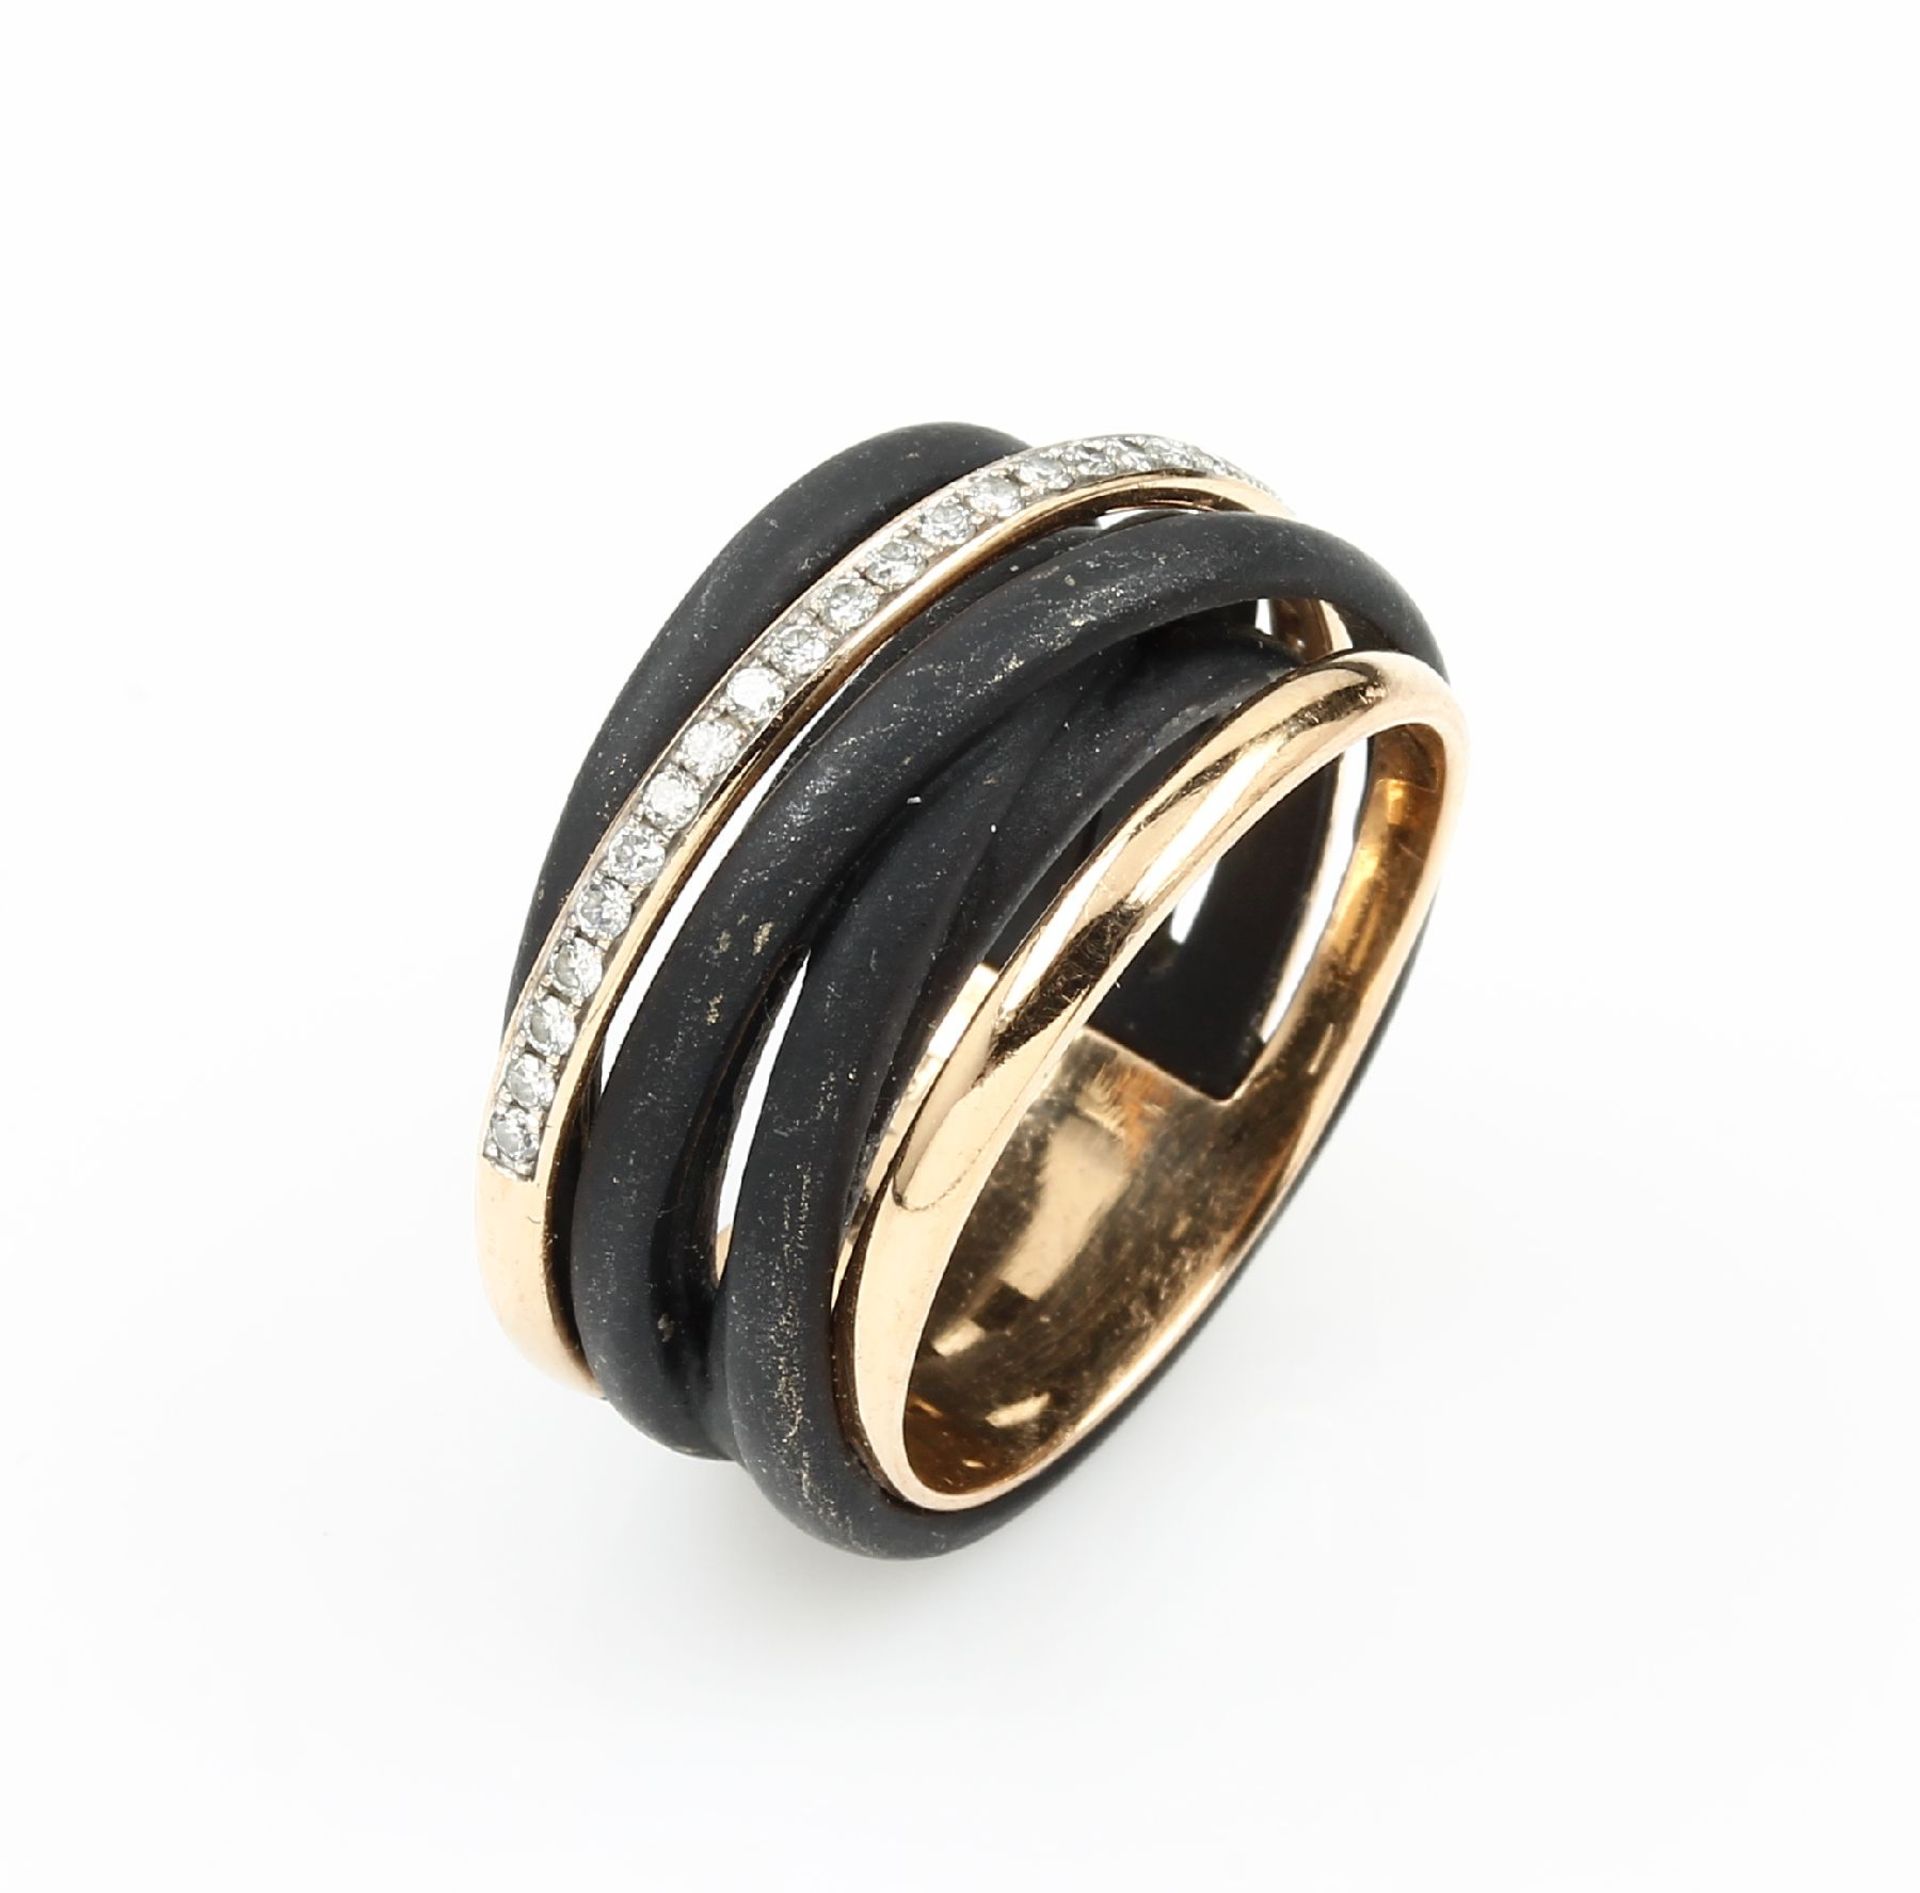 AL CORO 18 kt Gold Ring mit Brillanten, RoseG 750/000 und Eisen geschwärzt, 27 Brill. zus. ca. 0.